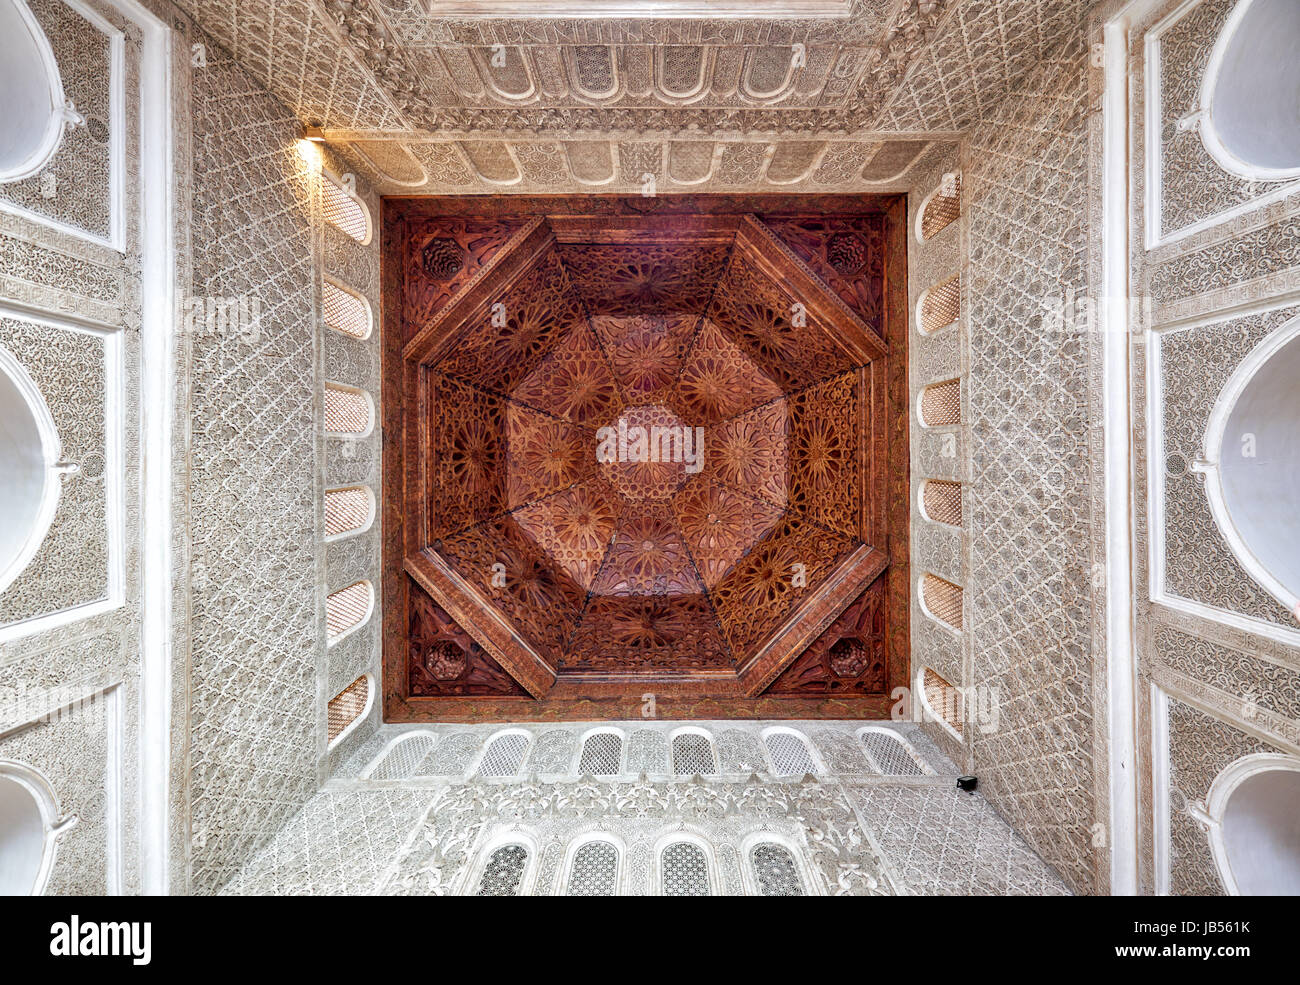 L'architecture mauresque de l'école islamique Medersa Ben Youssef, Marrakech, Maroc, Afrique Banque D'Images